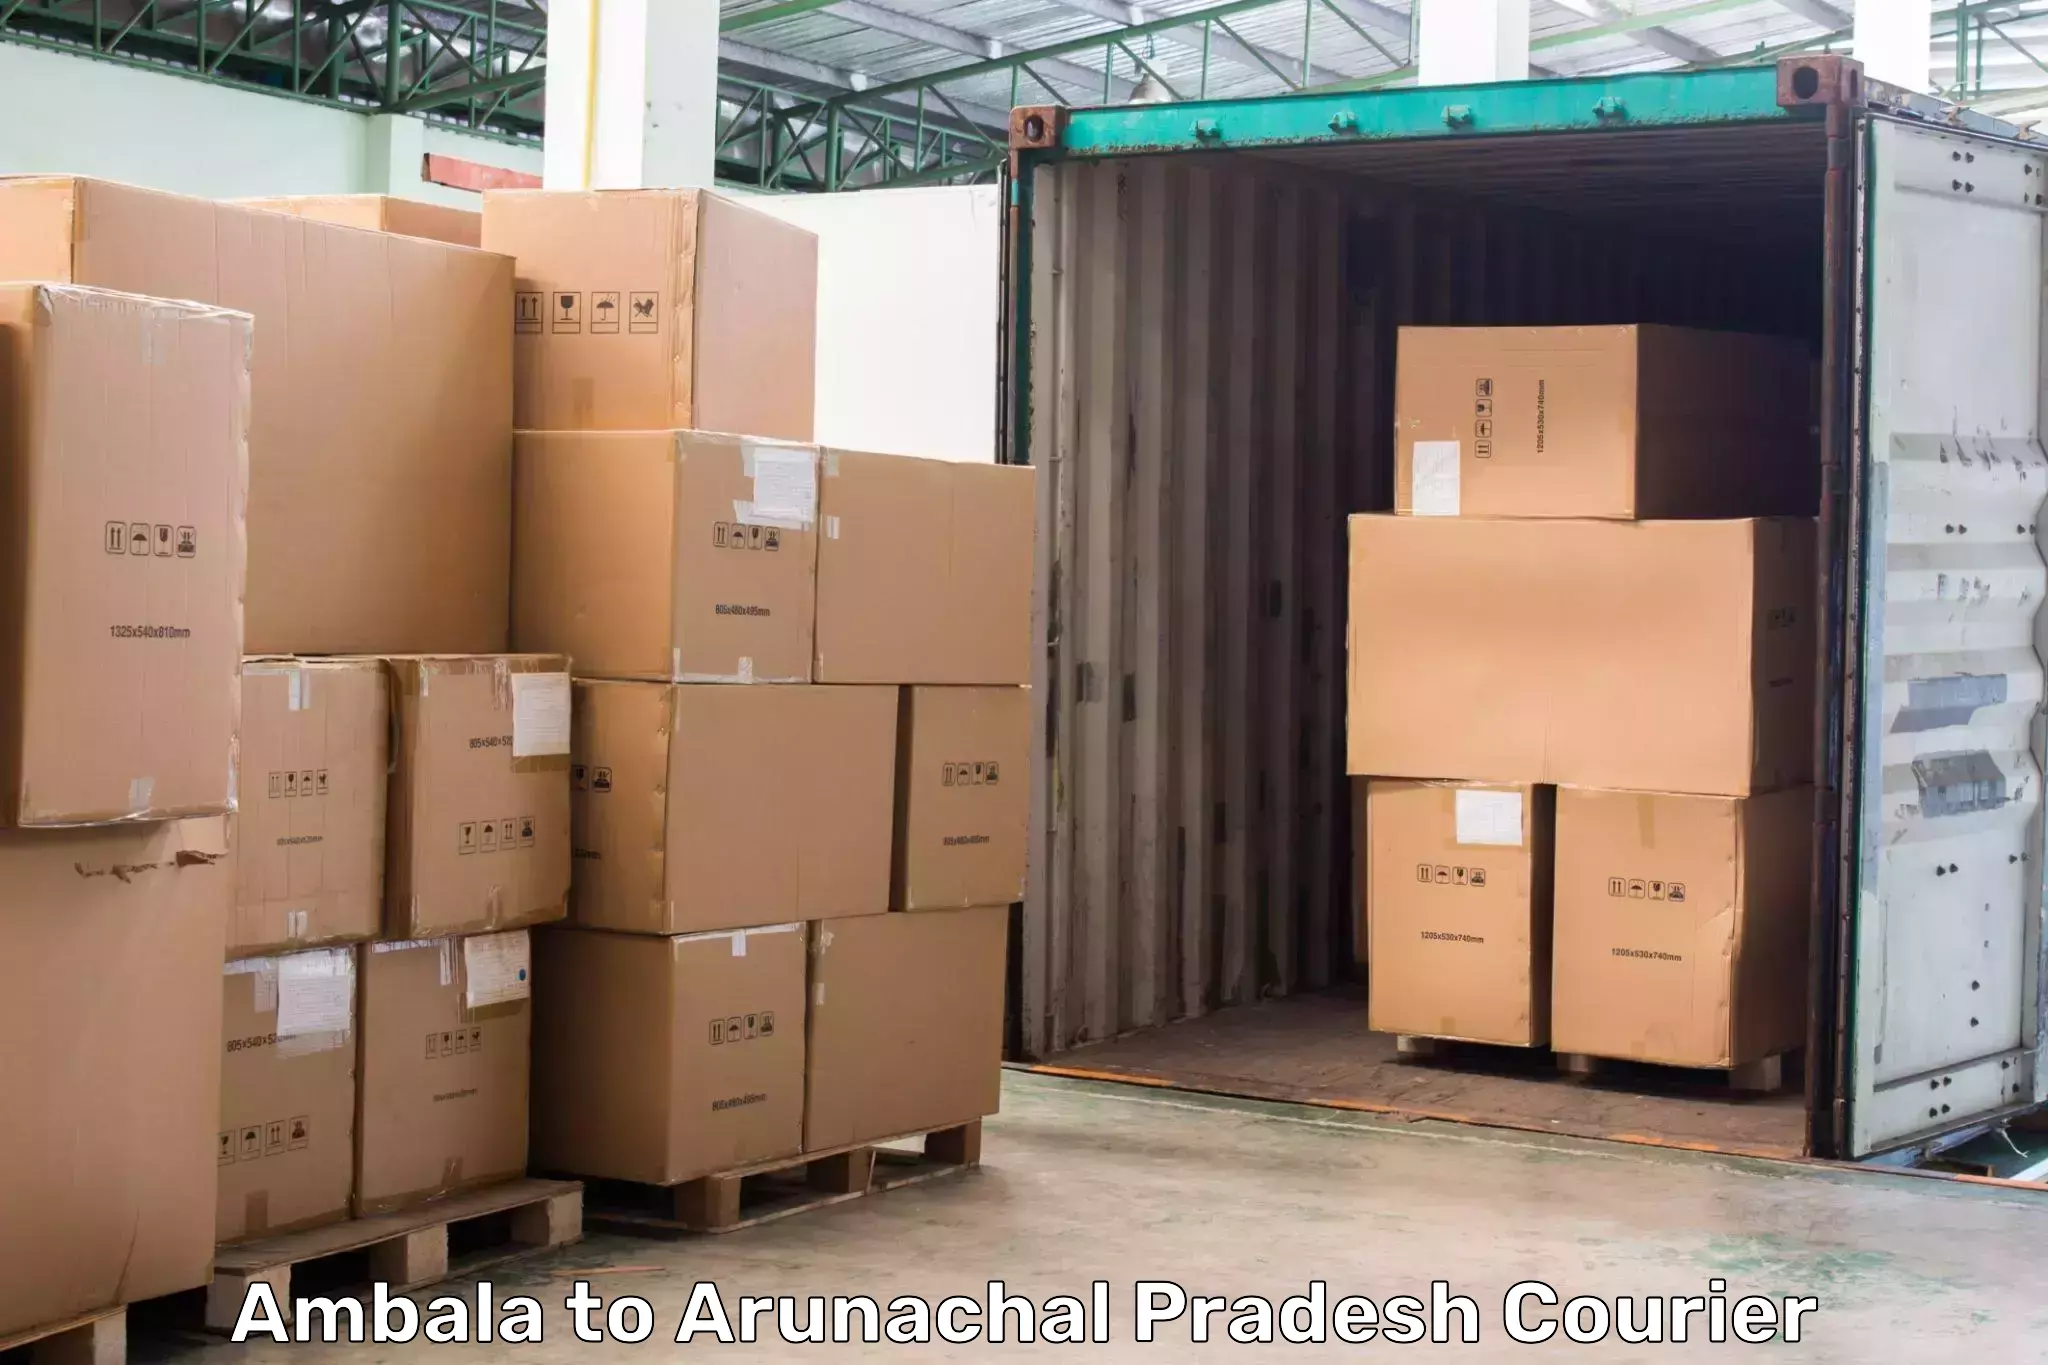 24-hour courier services Ambala to Arunachal Pradesh